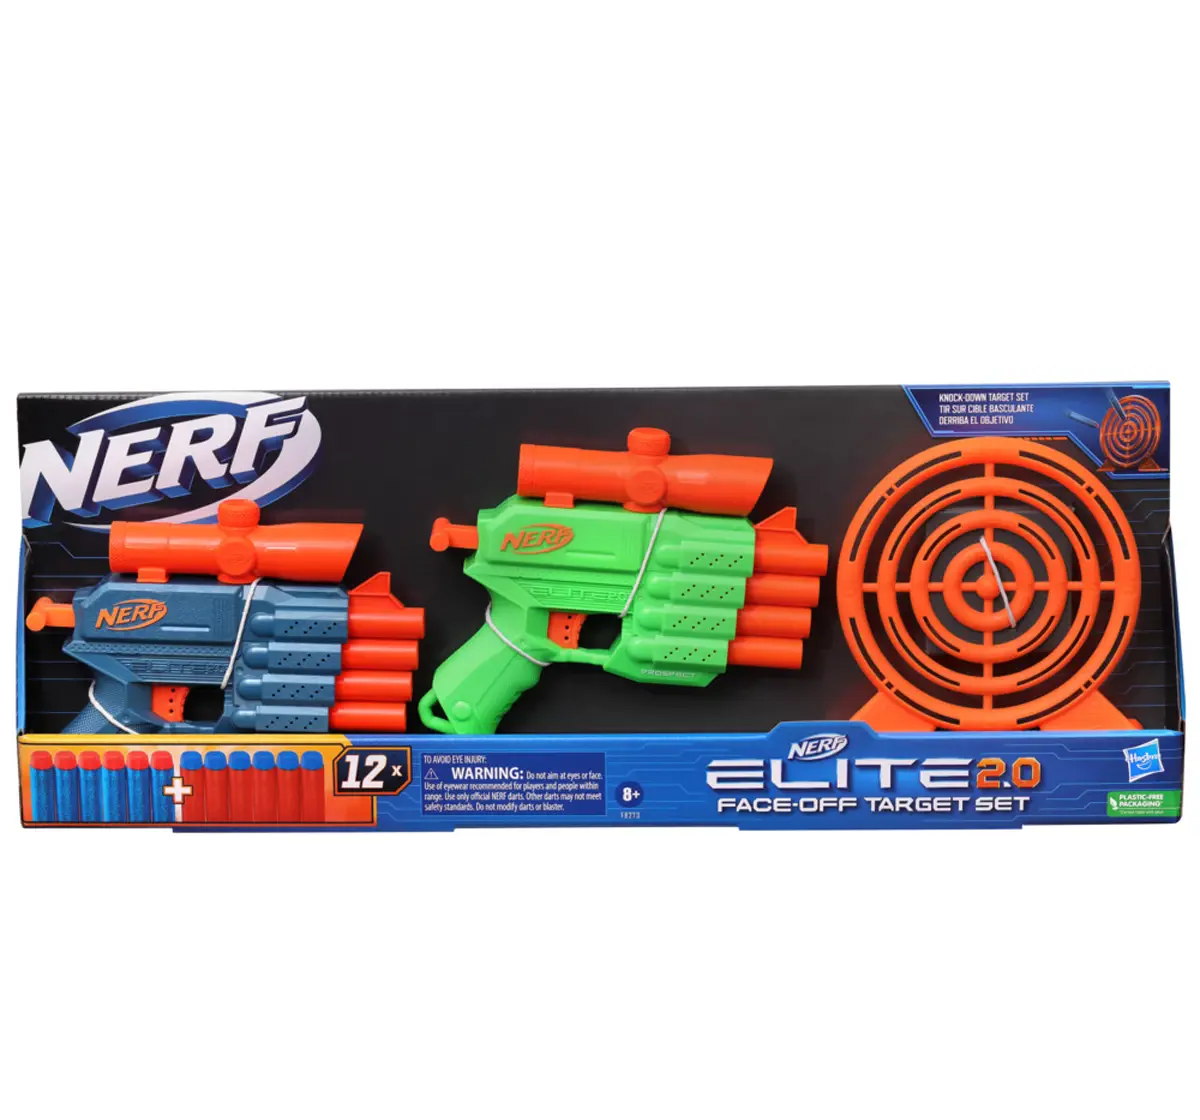 Nerf Elite 2.0 Face Off Target Set, Includes 2 Dart Blasters & Target; 12 Nerf Elite Darts, Toy Foam Blasters, 8Y+